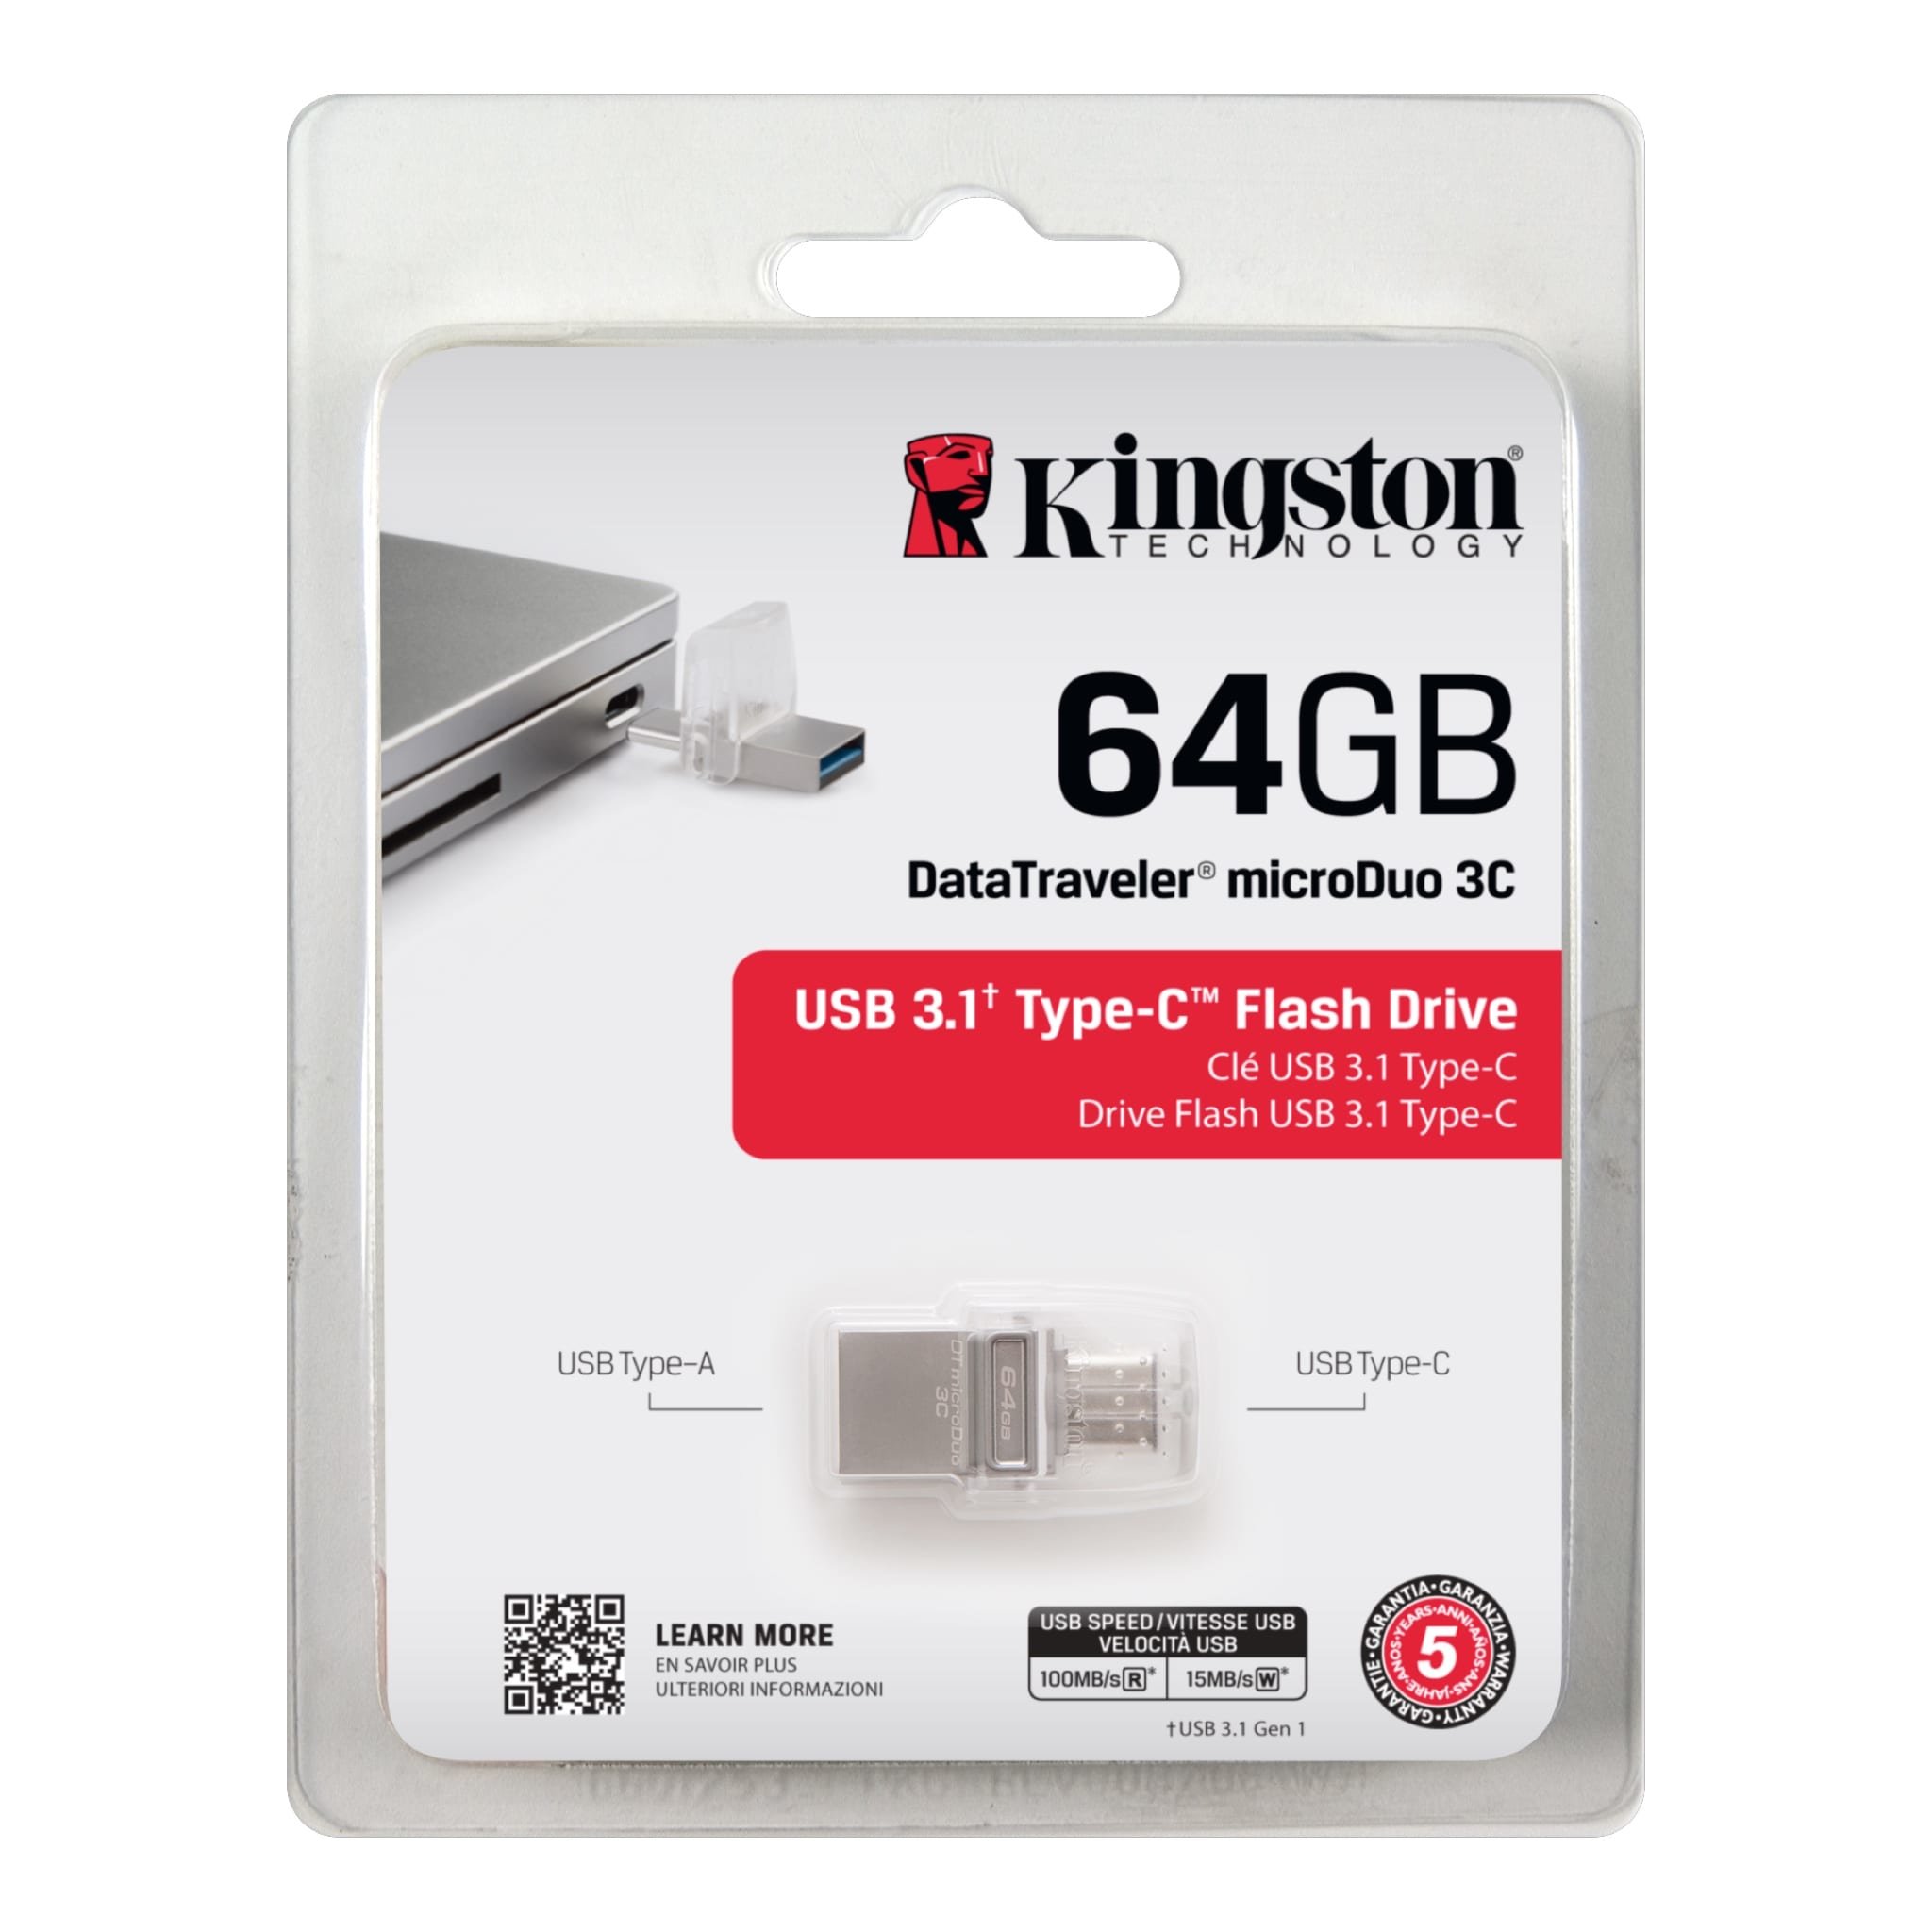 Pamięć Kingston 64GB Data Traveler MicroDuo 3C USB 3.1 DTDUO3C/64GB widok na pendrive w opakowaniu od przodu